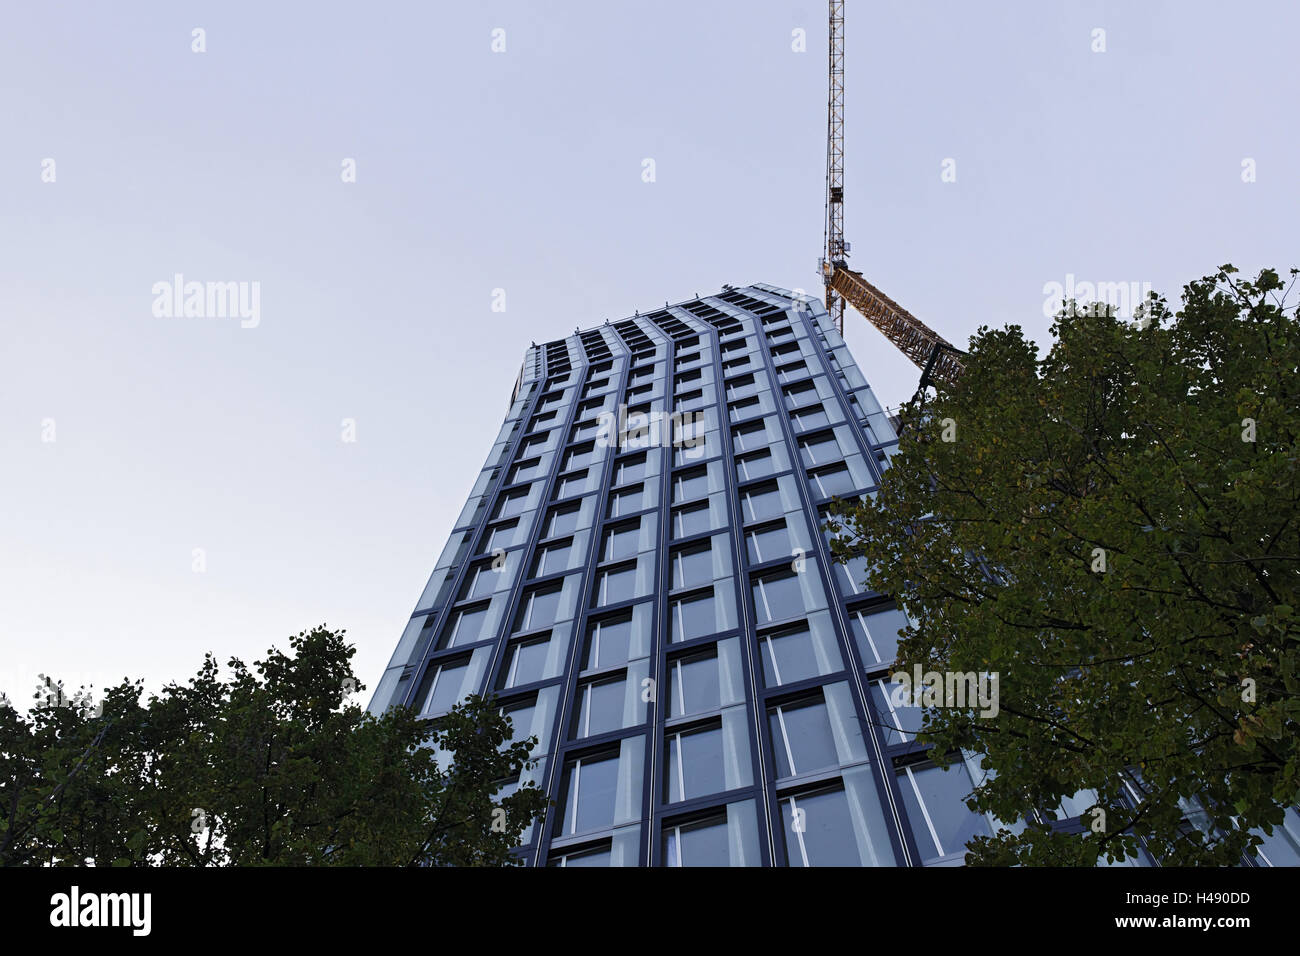 L'architecture moderne, façade, 'Dancing towers', nouveau bâtiment de bureau dans la Reeperbahn 1, Saint Pauli, milieu, la ville hanséatique de Hambourg, Allemagne, Banque D'Images